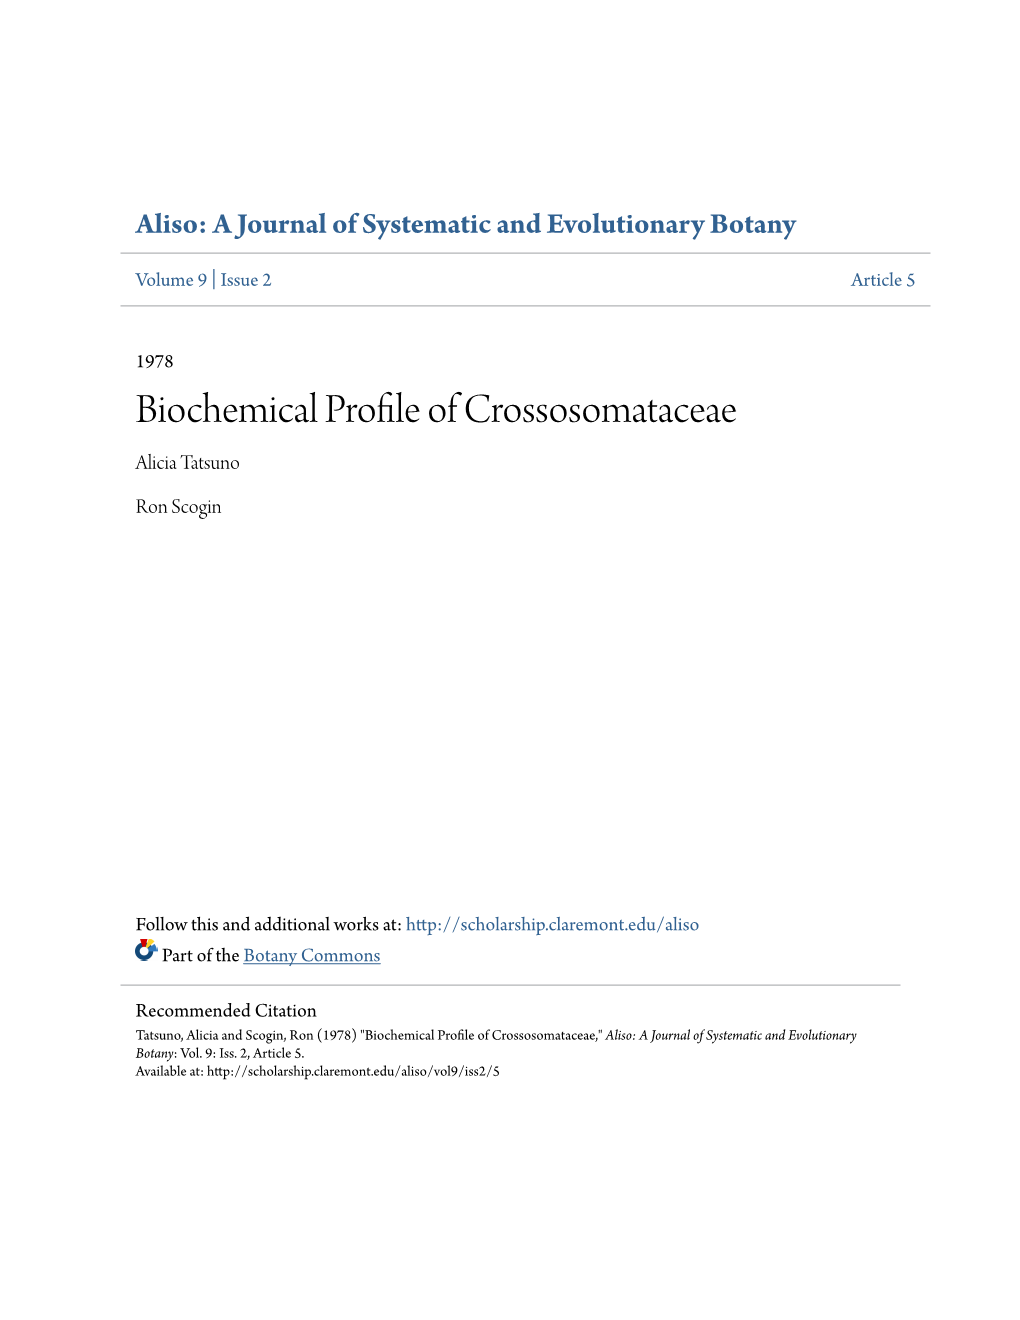 Biochemical Profile of Crossosomataceae Alicia Tatsuno